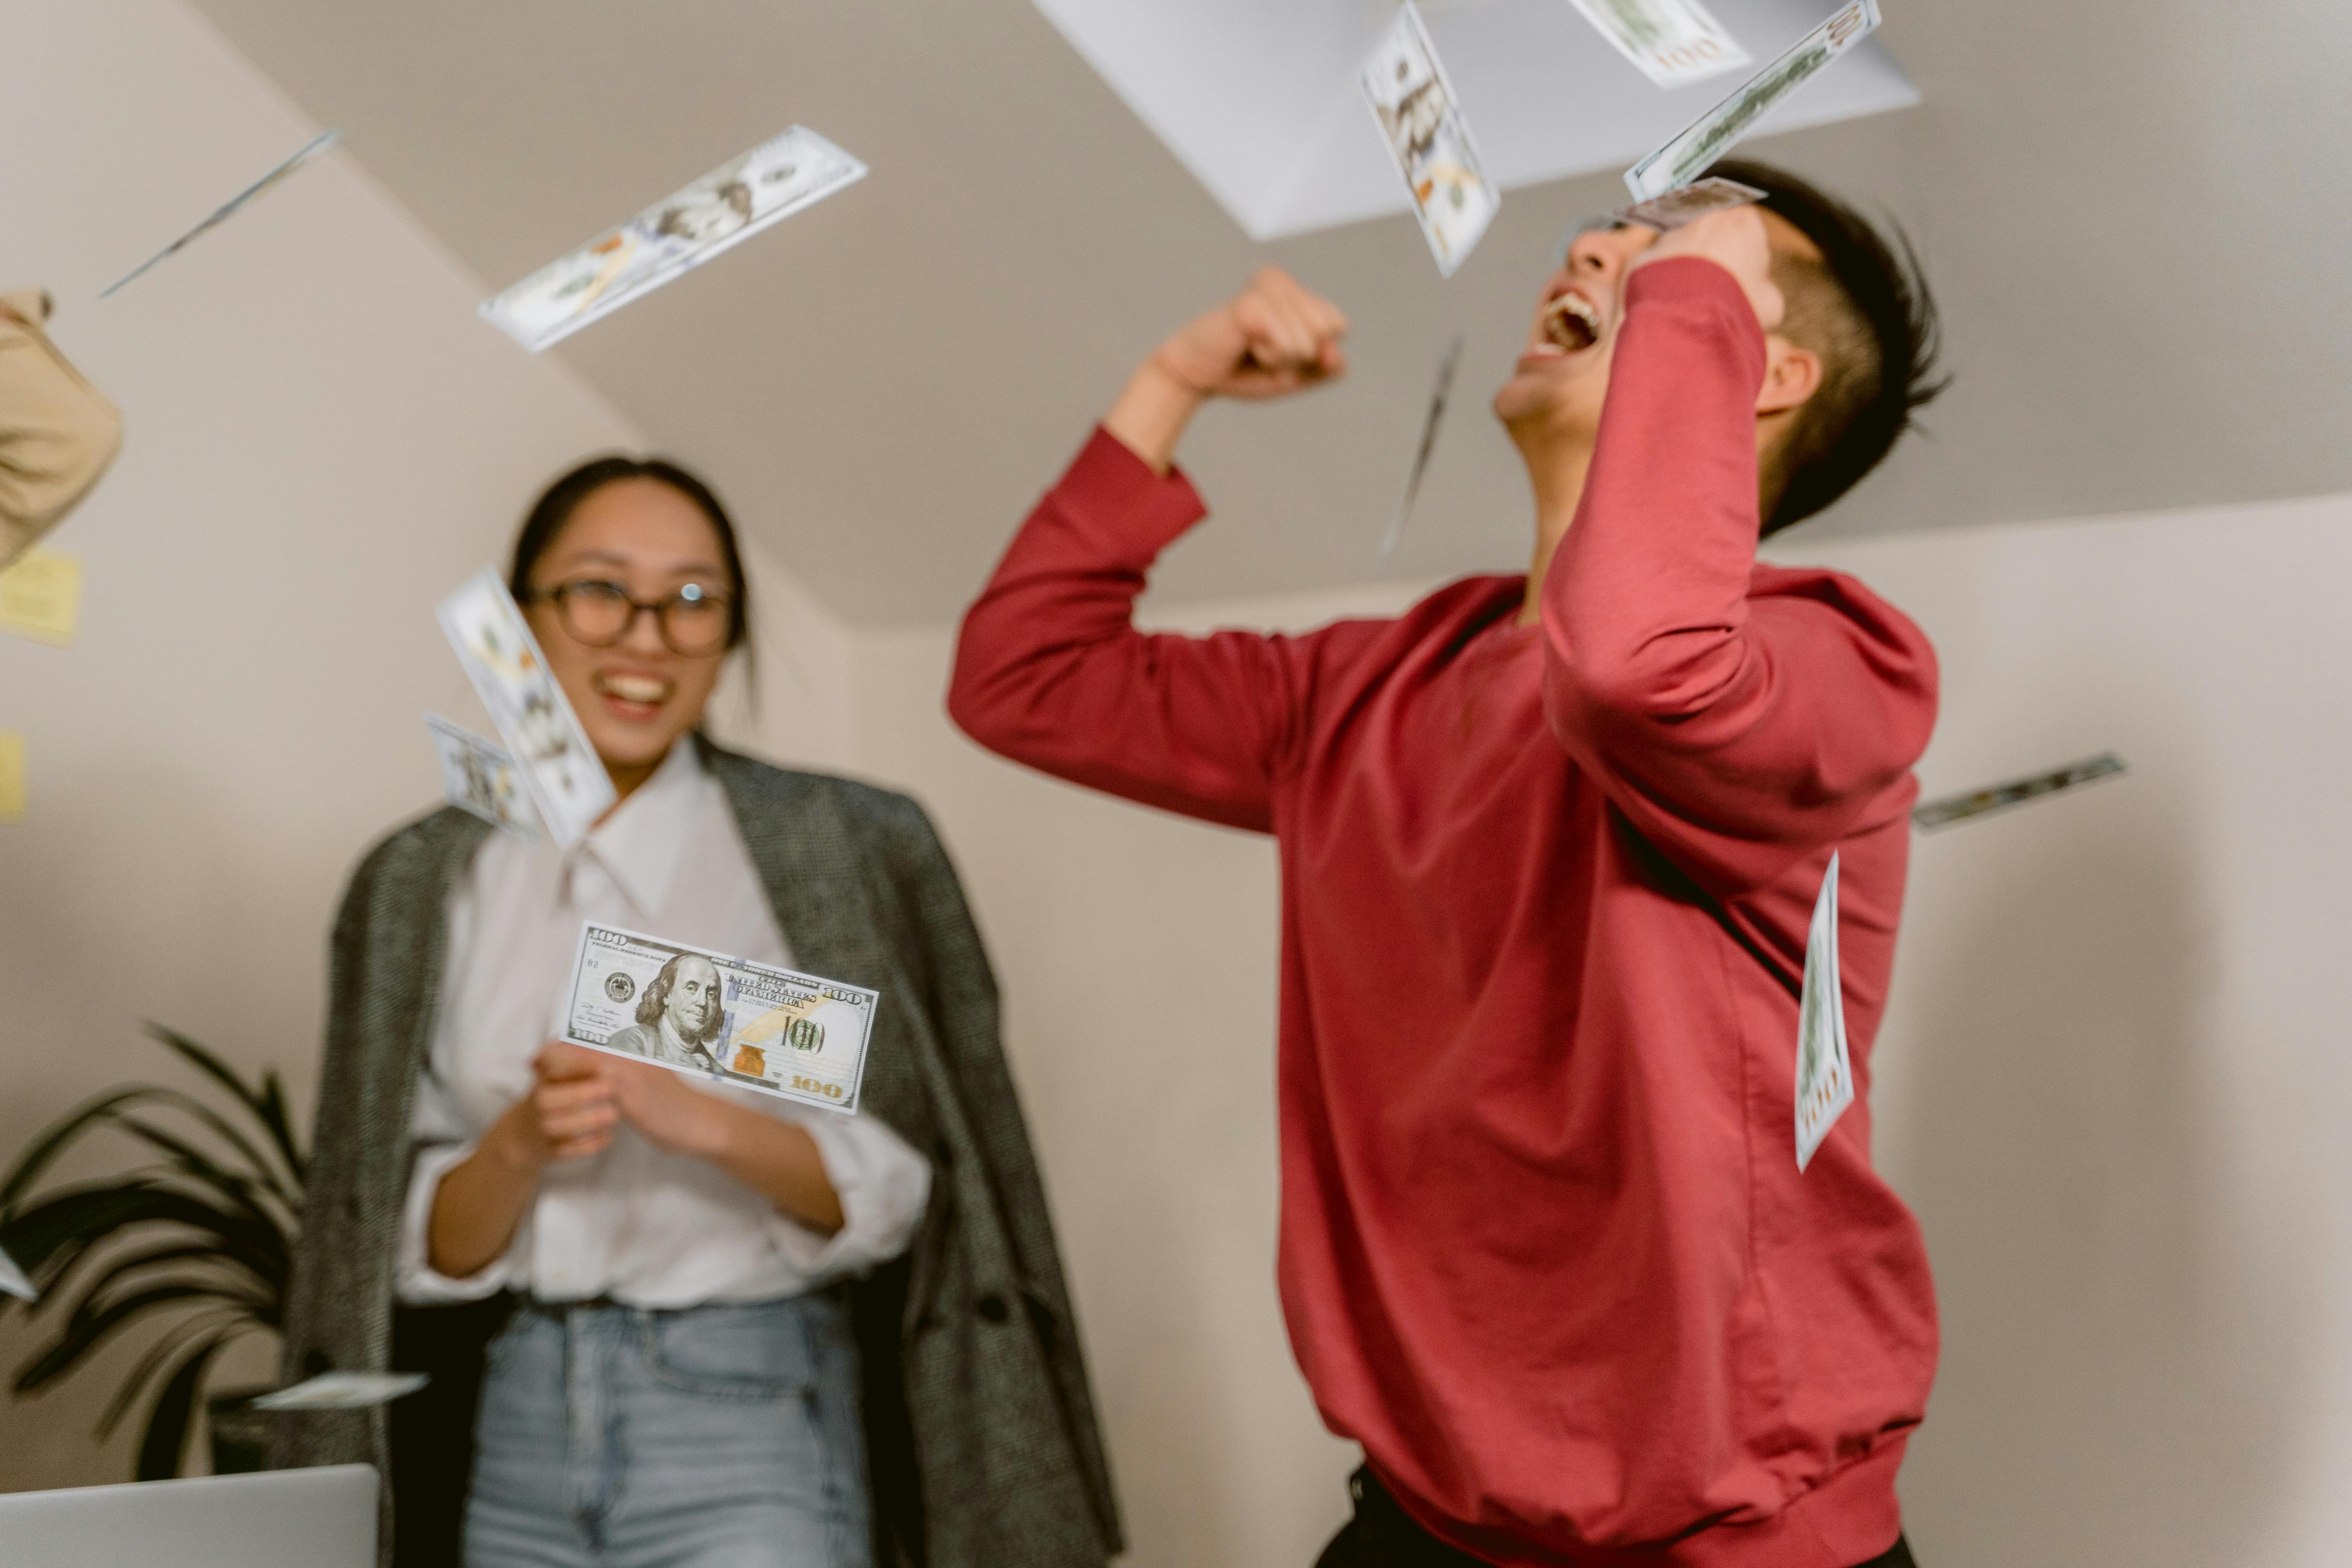 Eine Frau sieht einem Mann zu, der feiert, indem er Geld in die Luft wirft | Quelle: Pexels